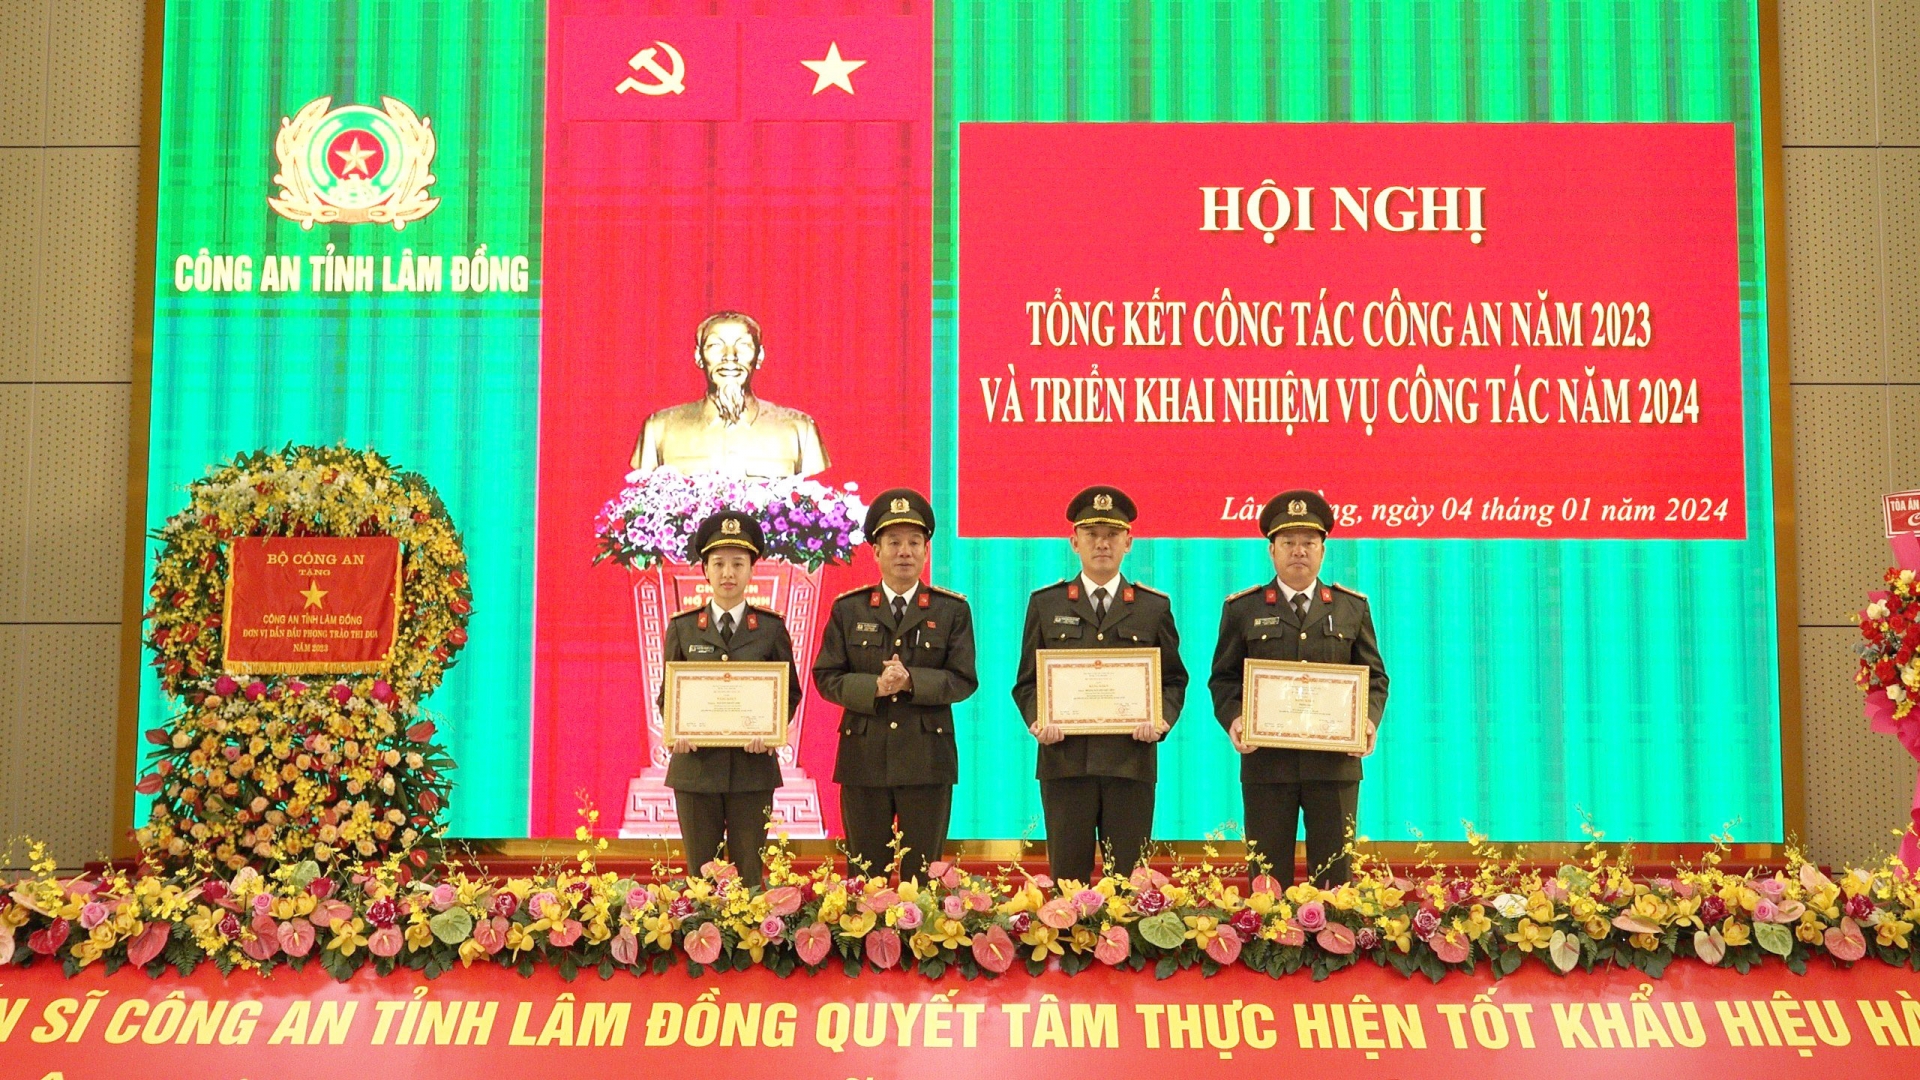 Đại tá Lê Hồng Phong - Phó Giám đốc Công an tỉnh trao Bằng khen của Bộ trưởng Bộ Công an cho các các nhân có thành tích xuất sắc trong công tác và chiến đấu